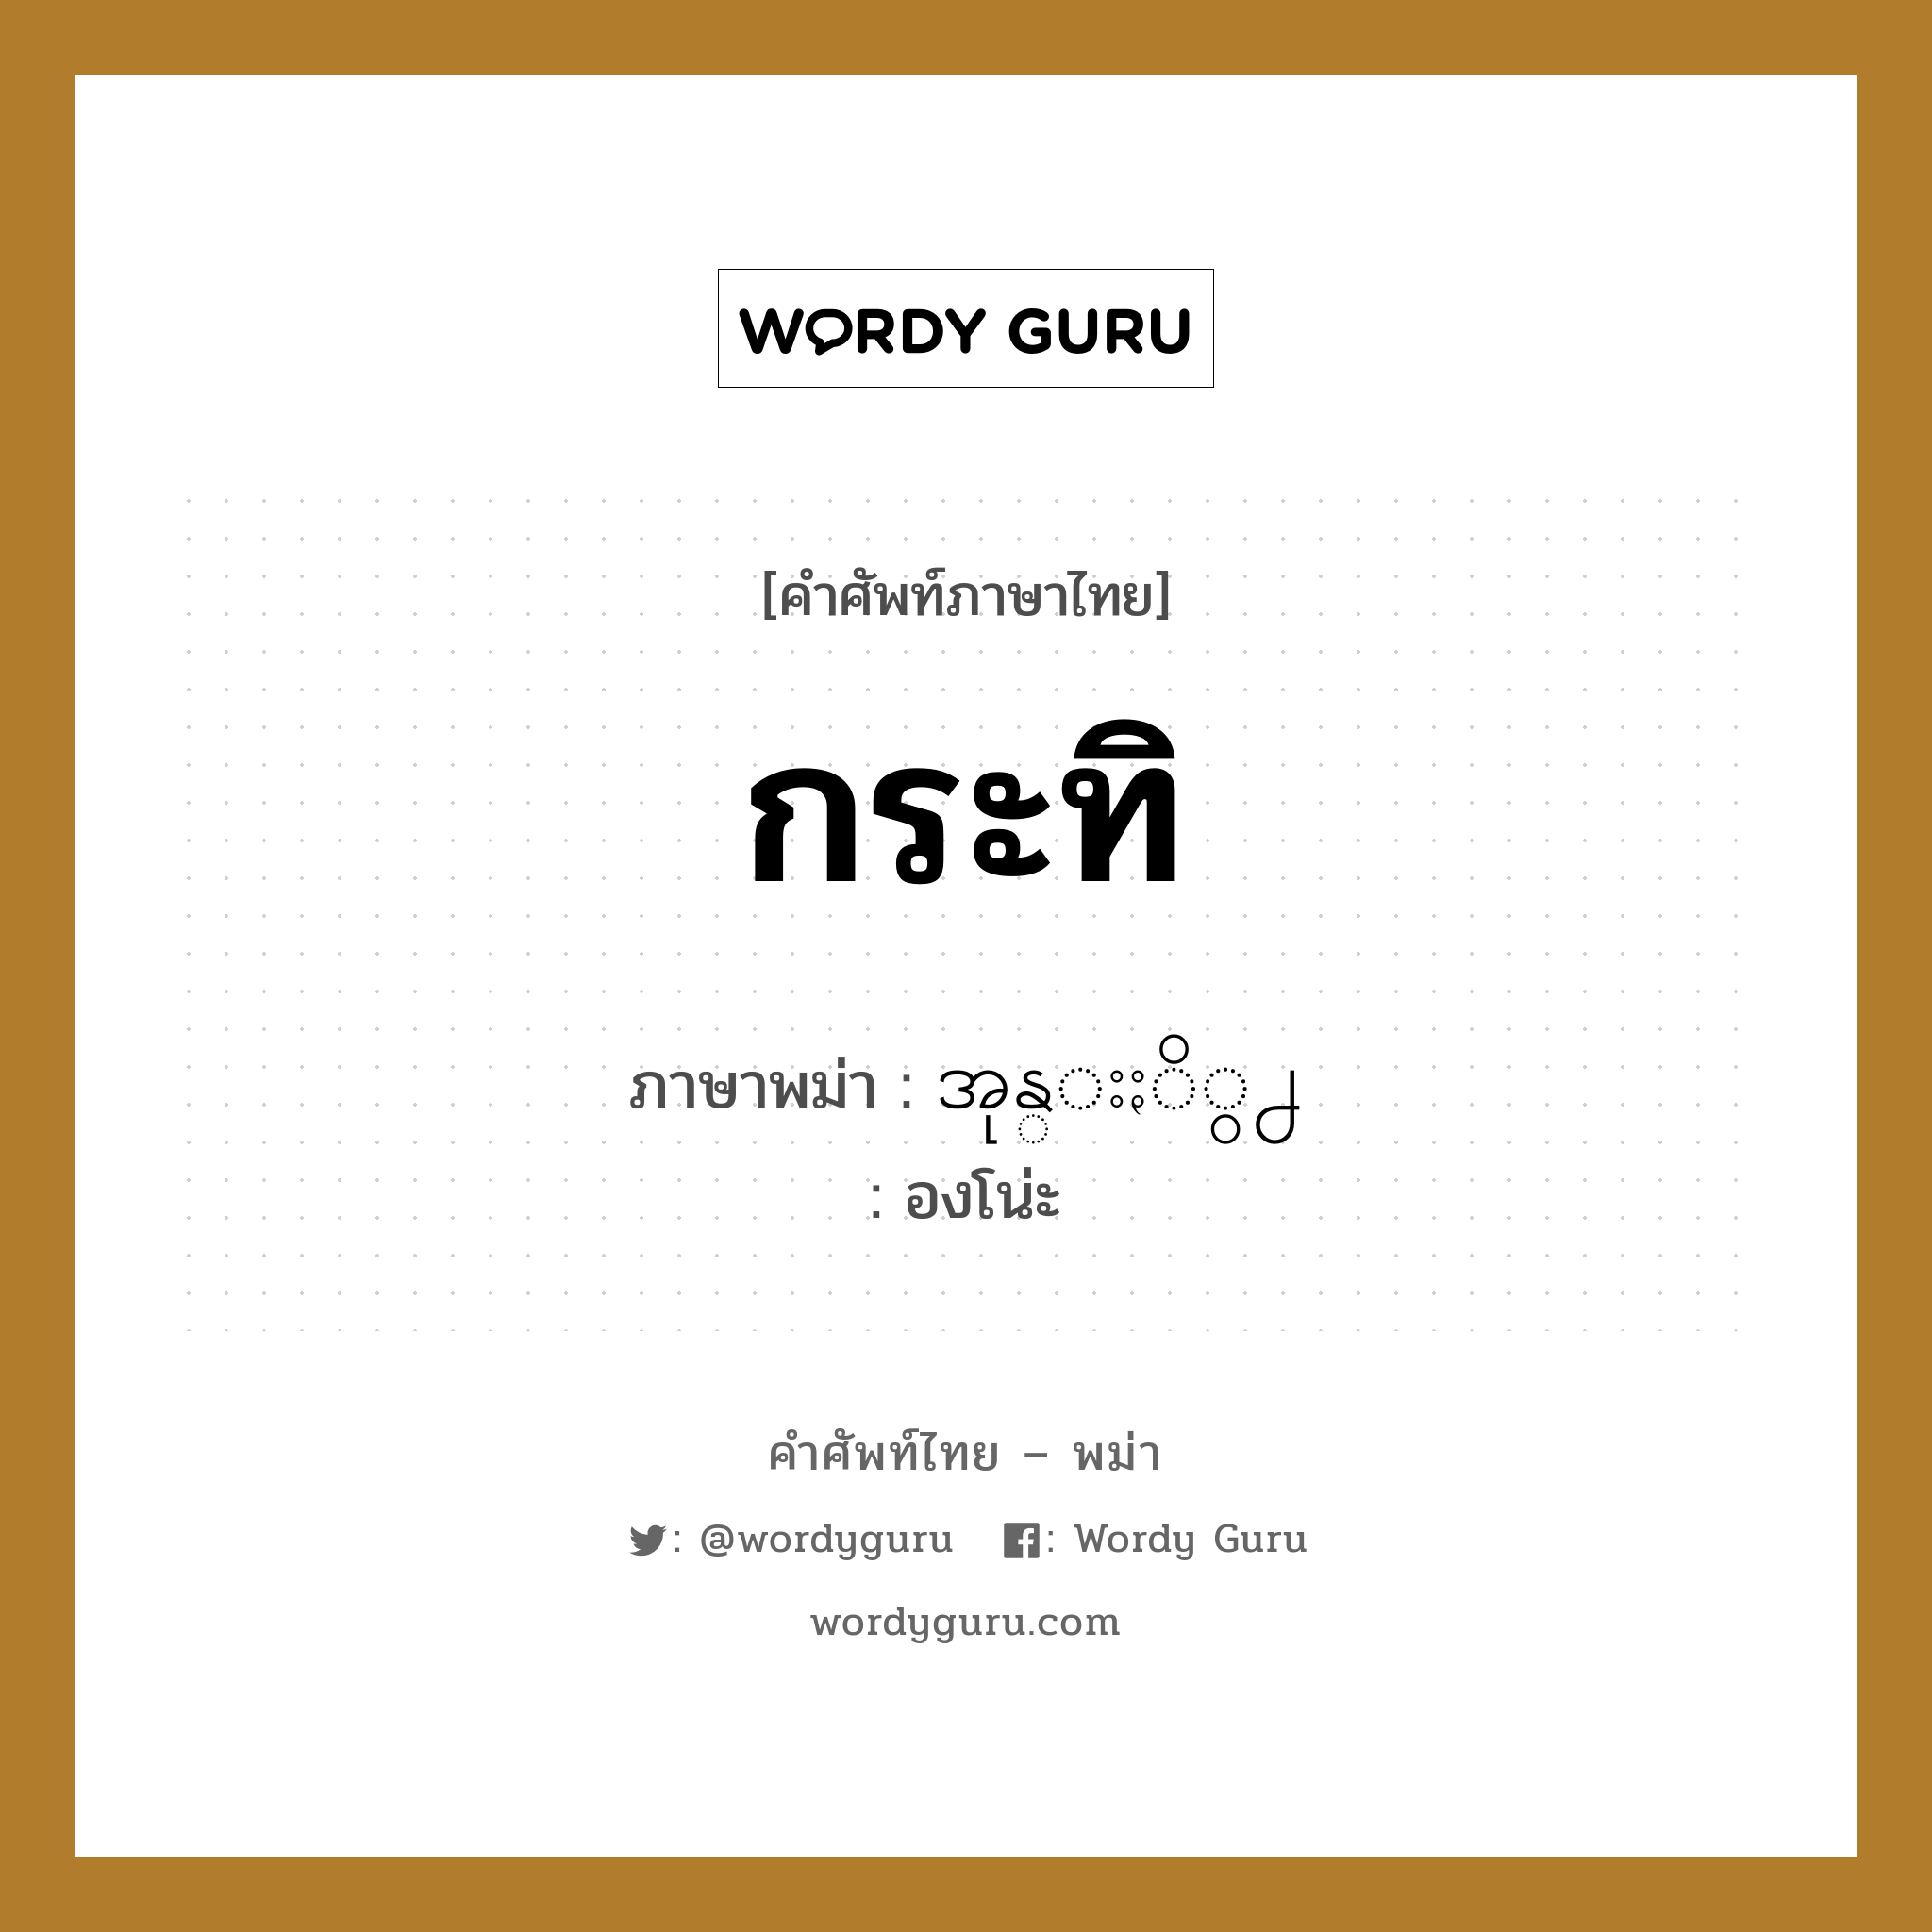 กระทิ ภาษาพม่าคืออะไร, คำศัพท์ภาษาไทย - พม่า กระทิ ภาษาพม่า အုန္းႏိွ႕ หมวด หมวดกับข้าวและอาหาร องโน่ะ หมวด หมวดกับข้าวและอาหาร